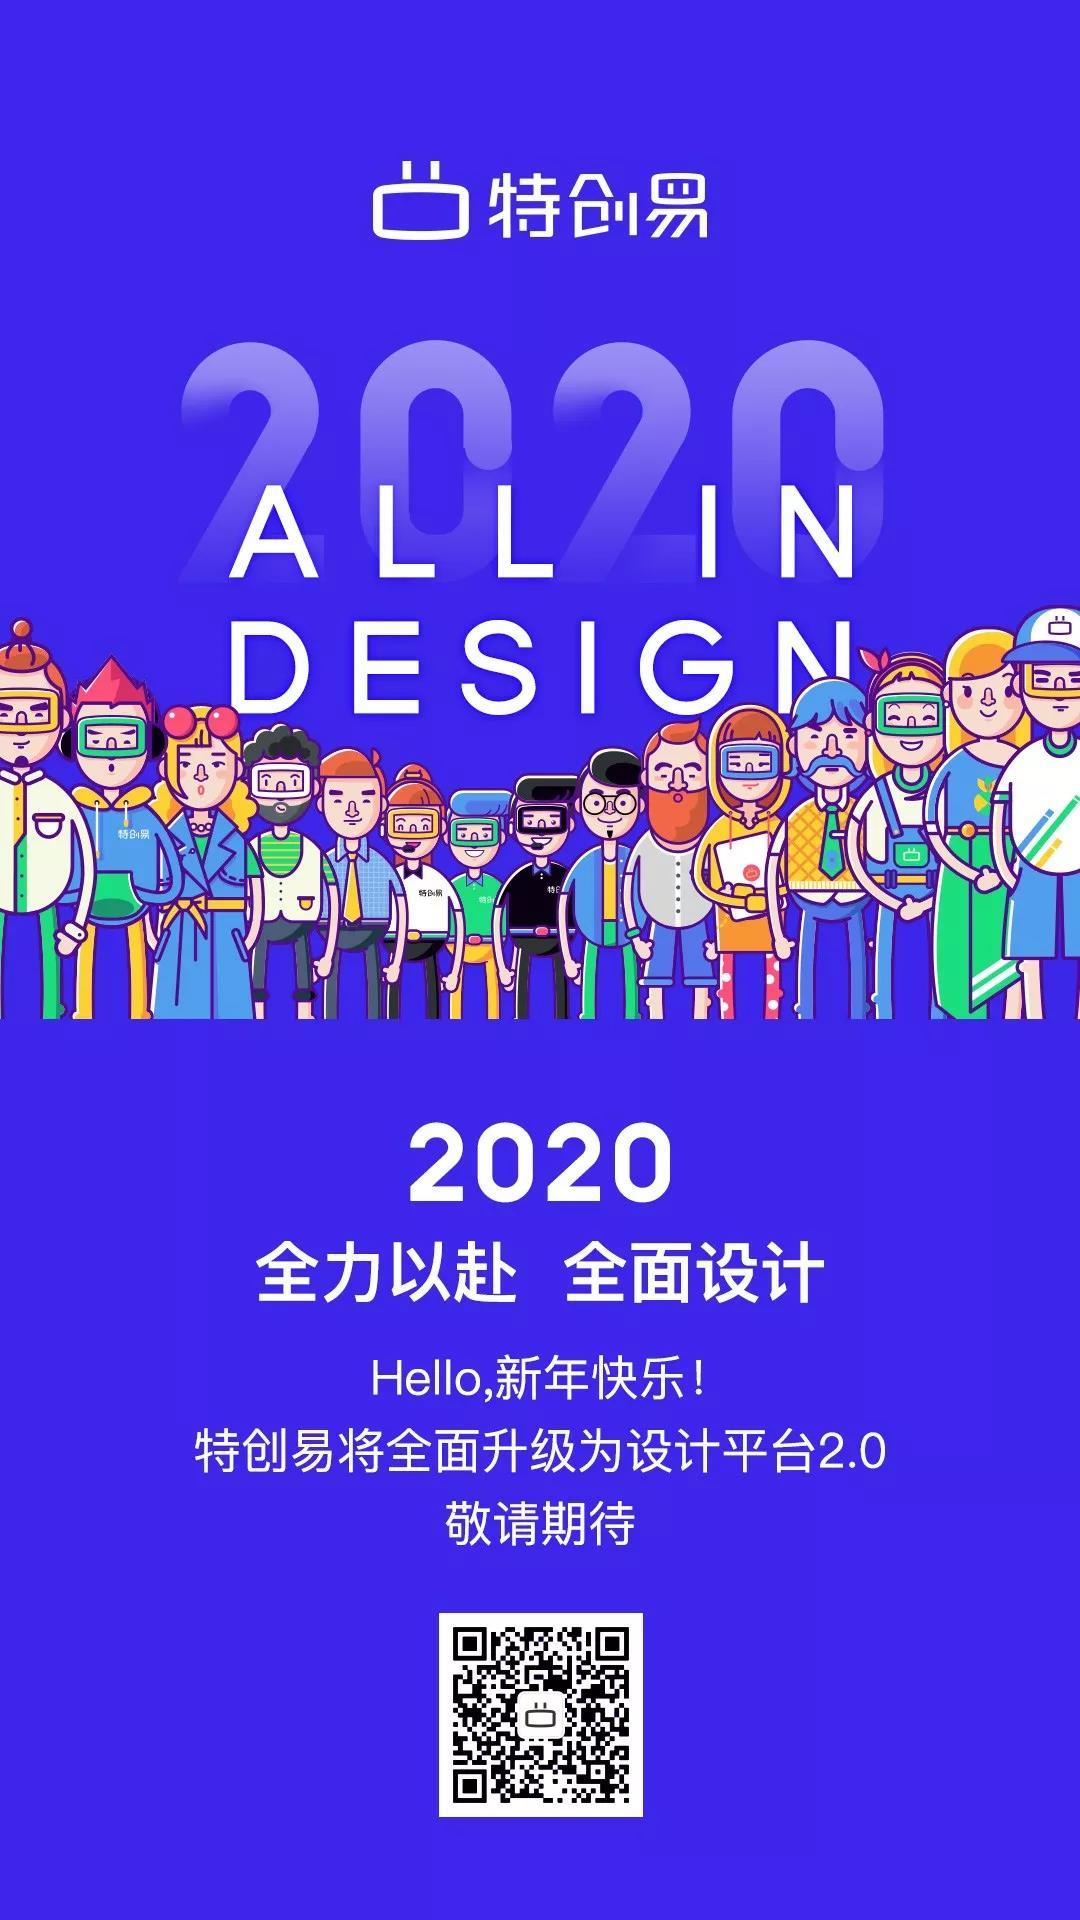 2020年特創易元旦主題海報設計中標圖0